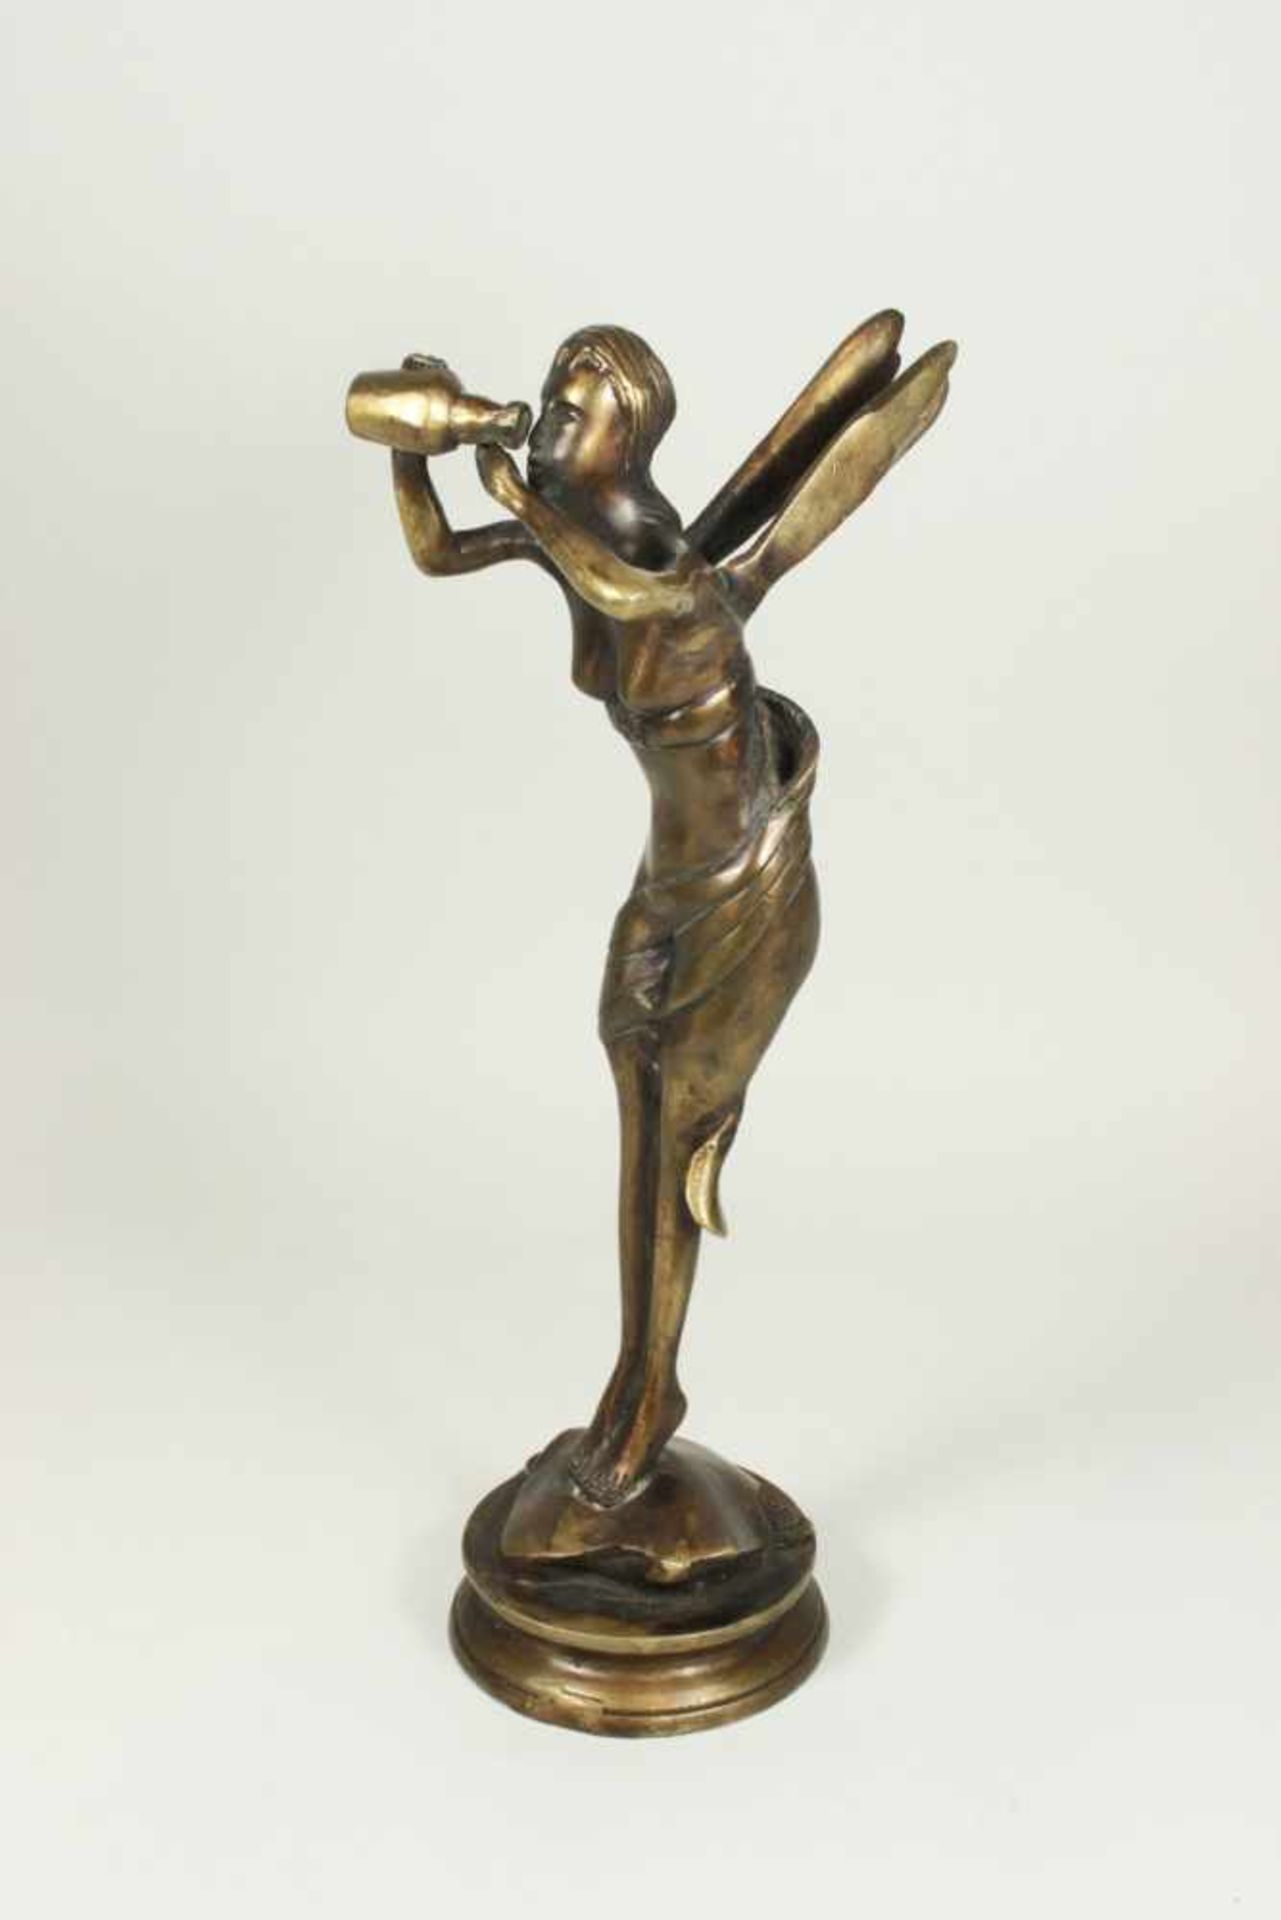 Fee, Bronze, weibliche Aktfigur mit Flügel und zum trinken angehobenem Gefäß, auf runder Plinthe,